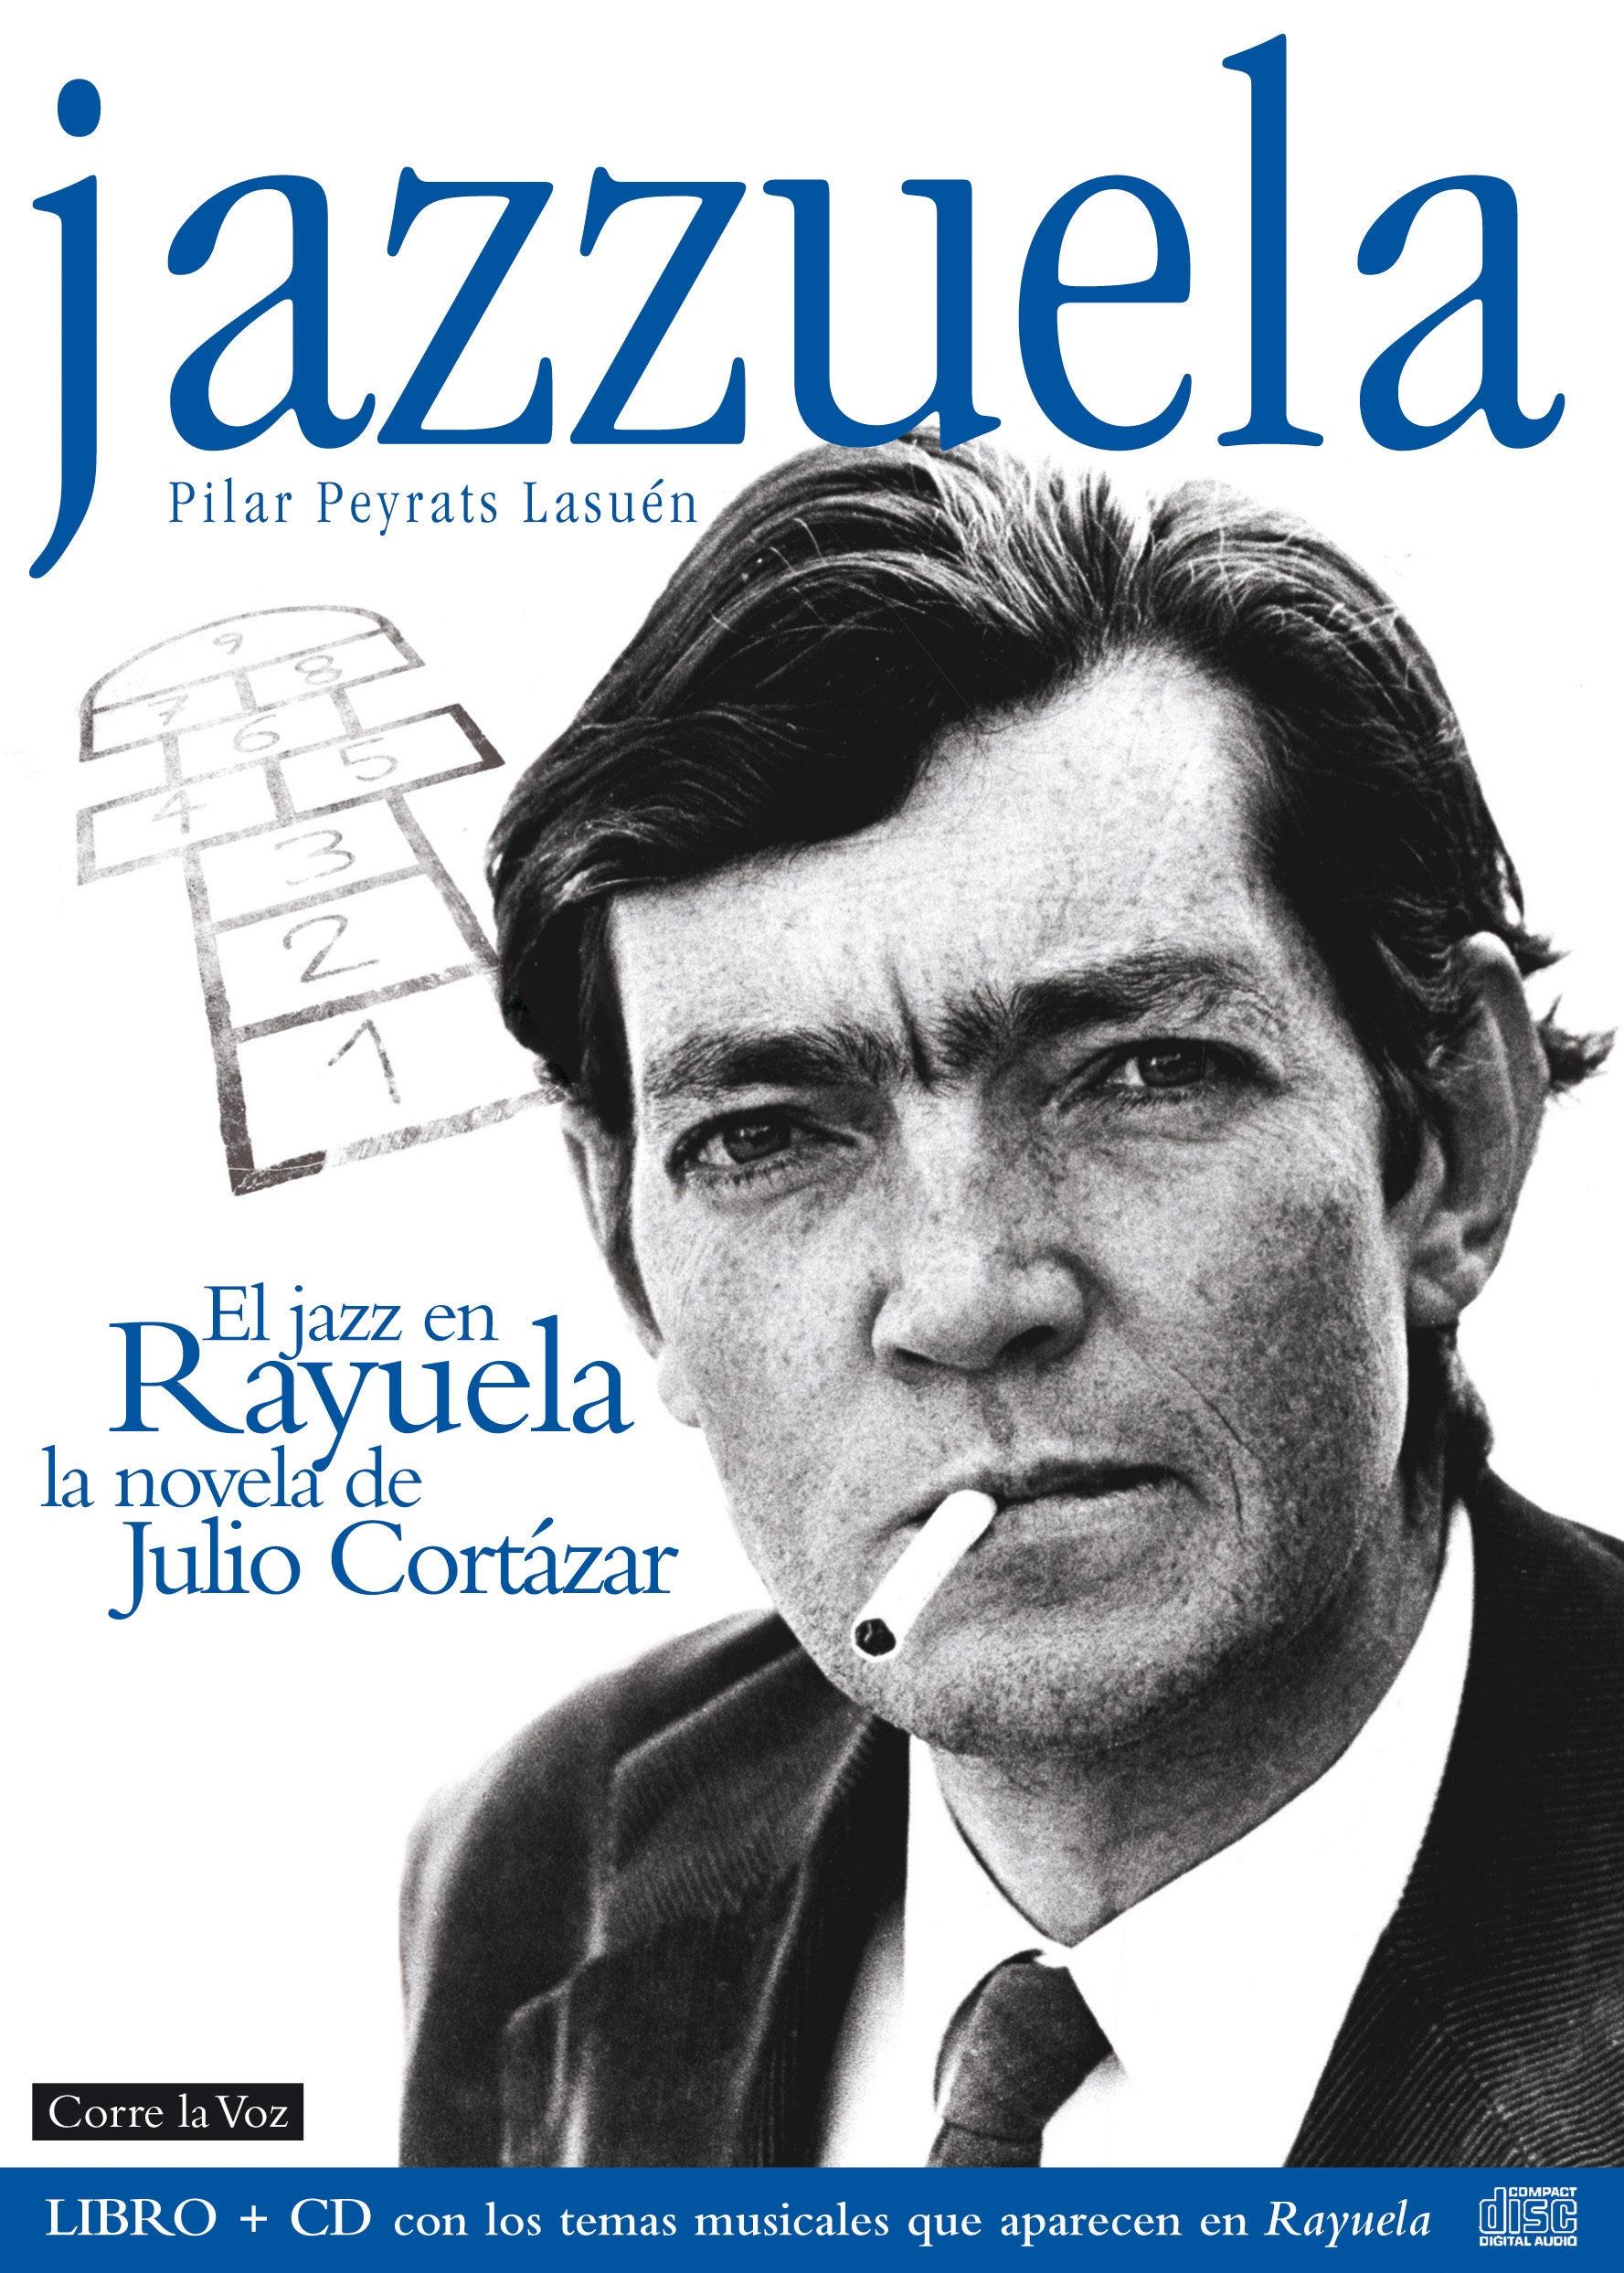 Jazzuela. El jazz en <Rayuela>, la novela de Julio Cortázar "(Libro + CD con los temas musicales que aparecen en <Rayuela>)". 